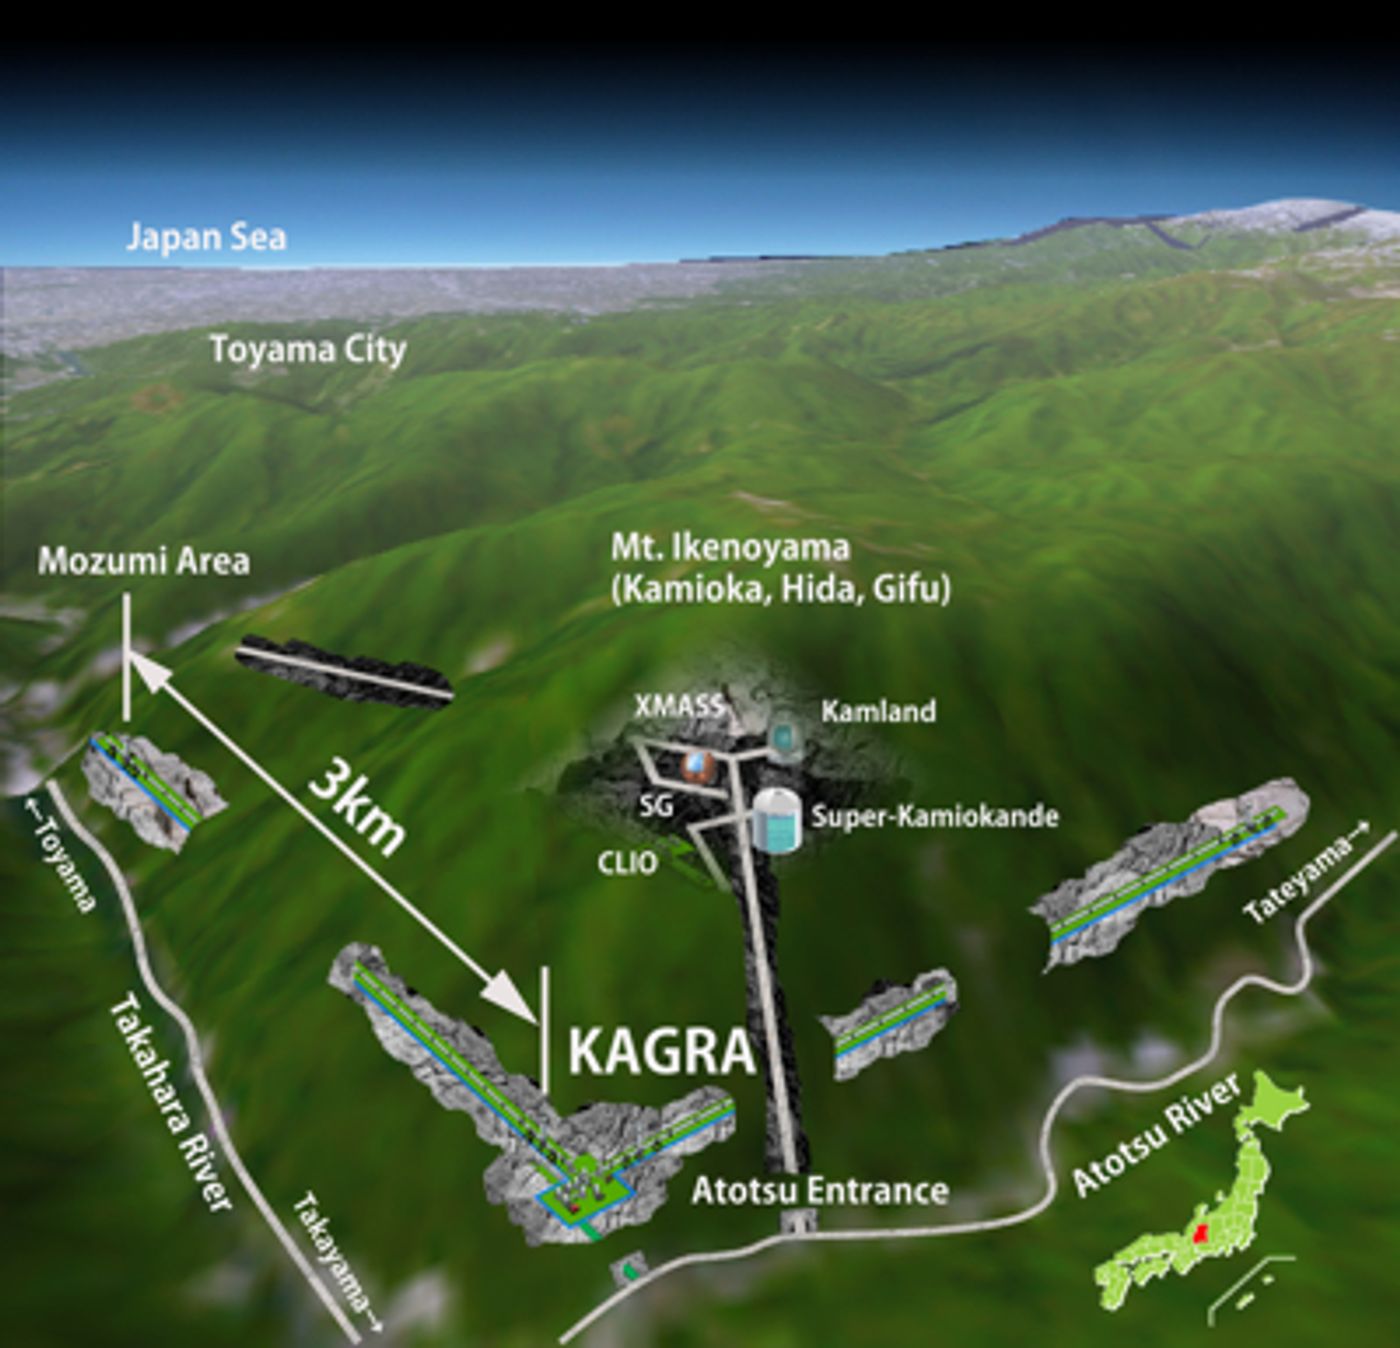 KAGRA Structure Scheme (ICRR)